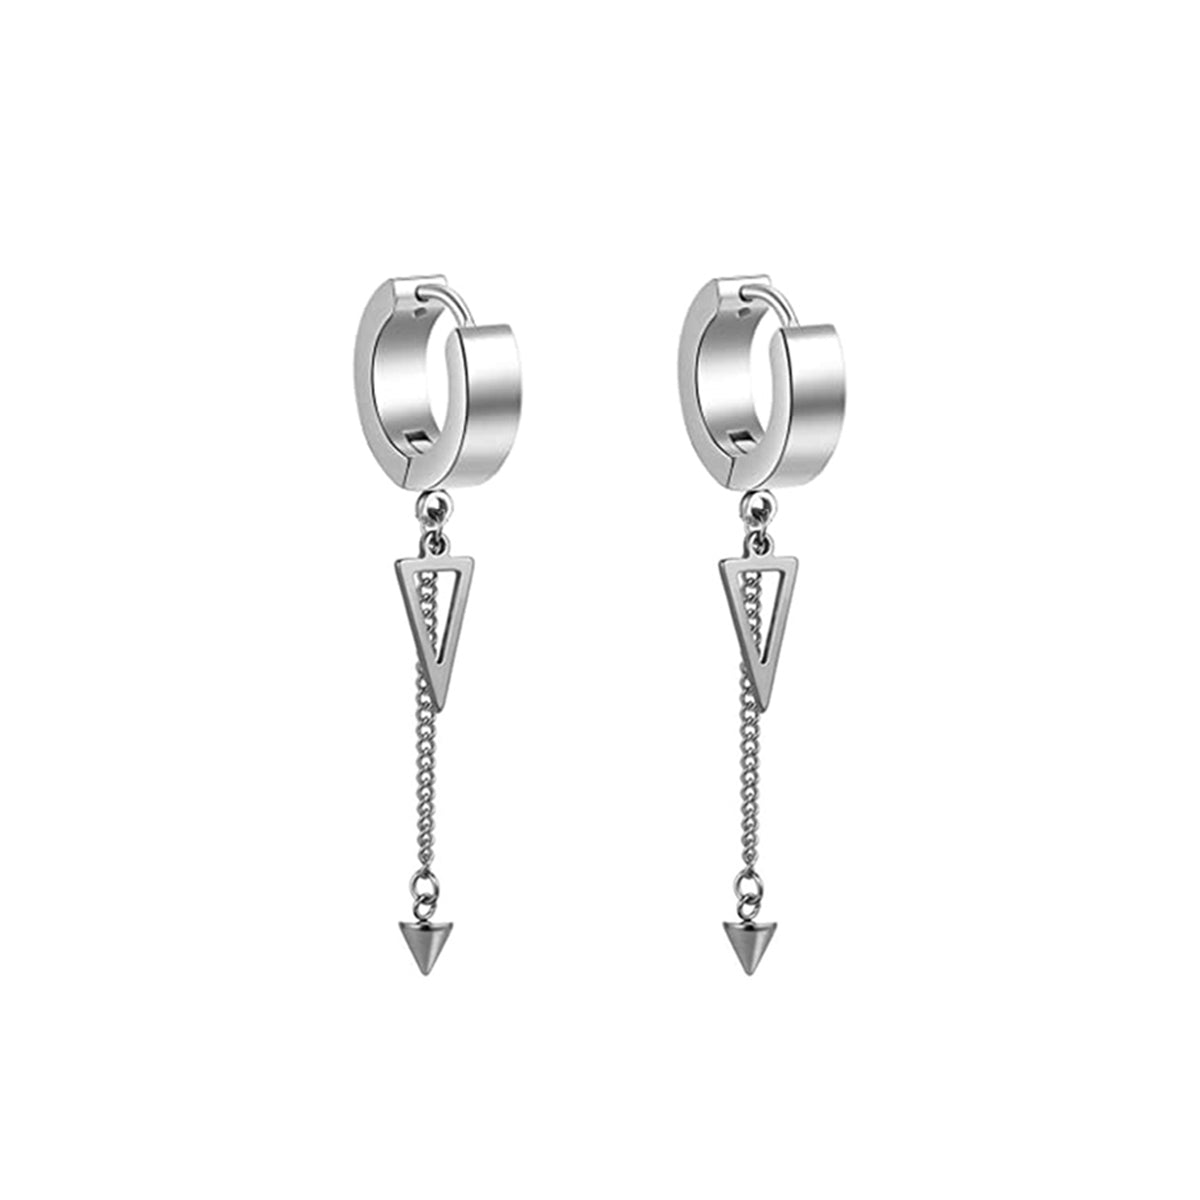 Spike pendant earrings chain earrings (Steel 316L)